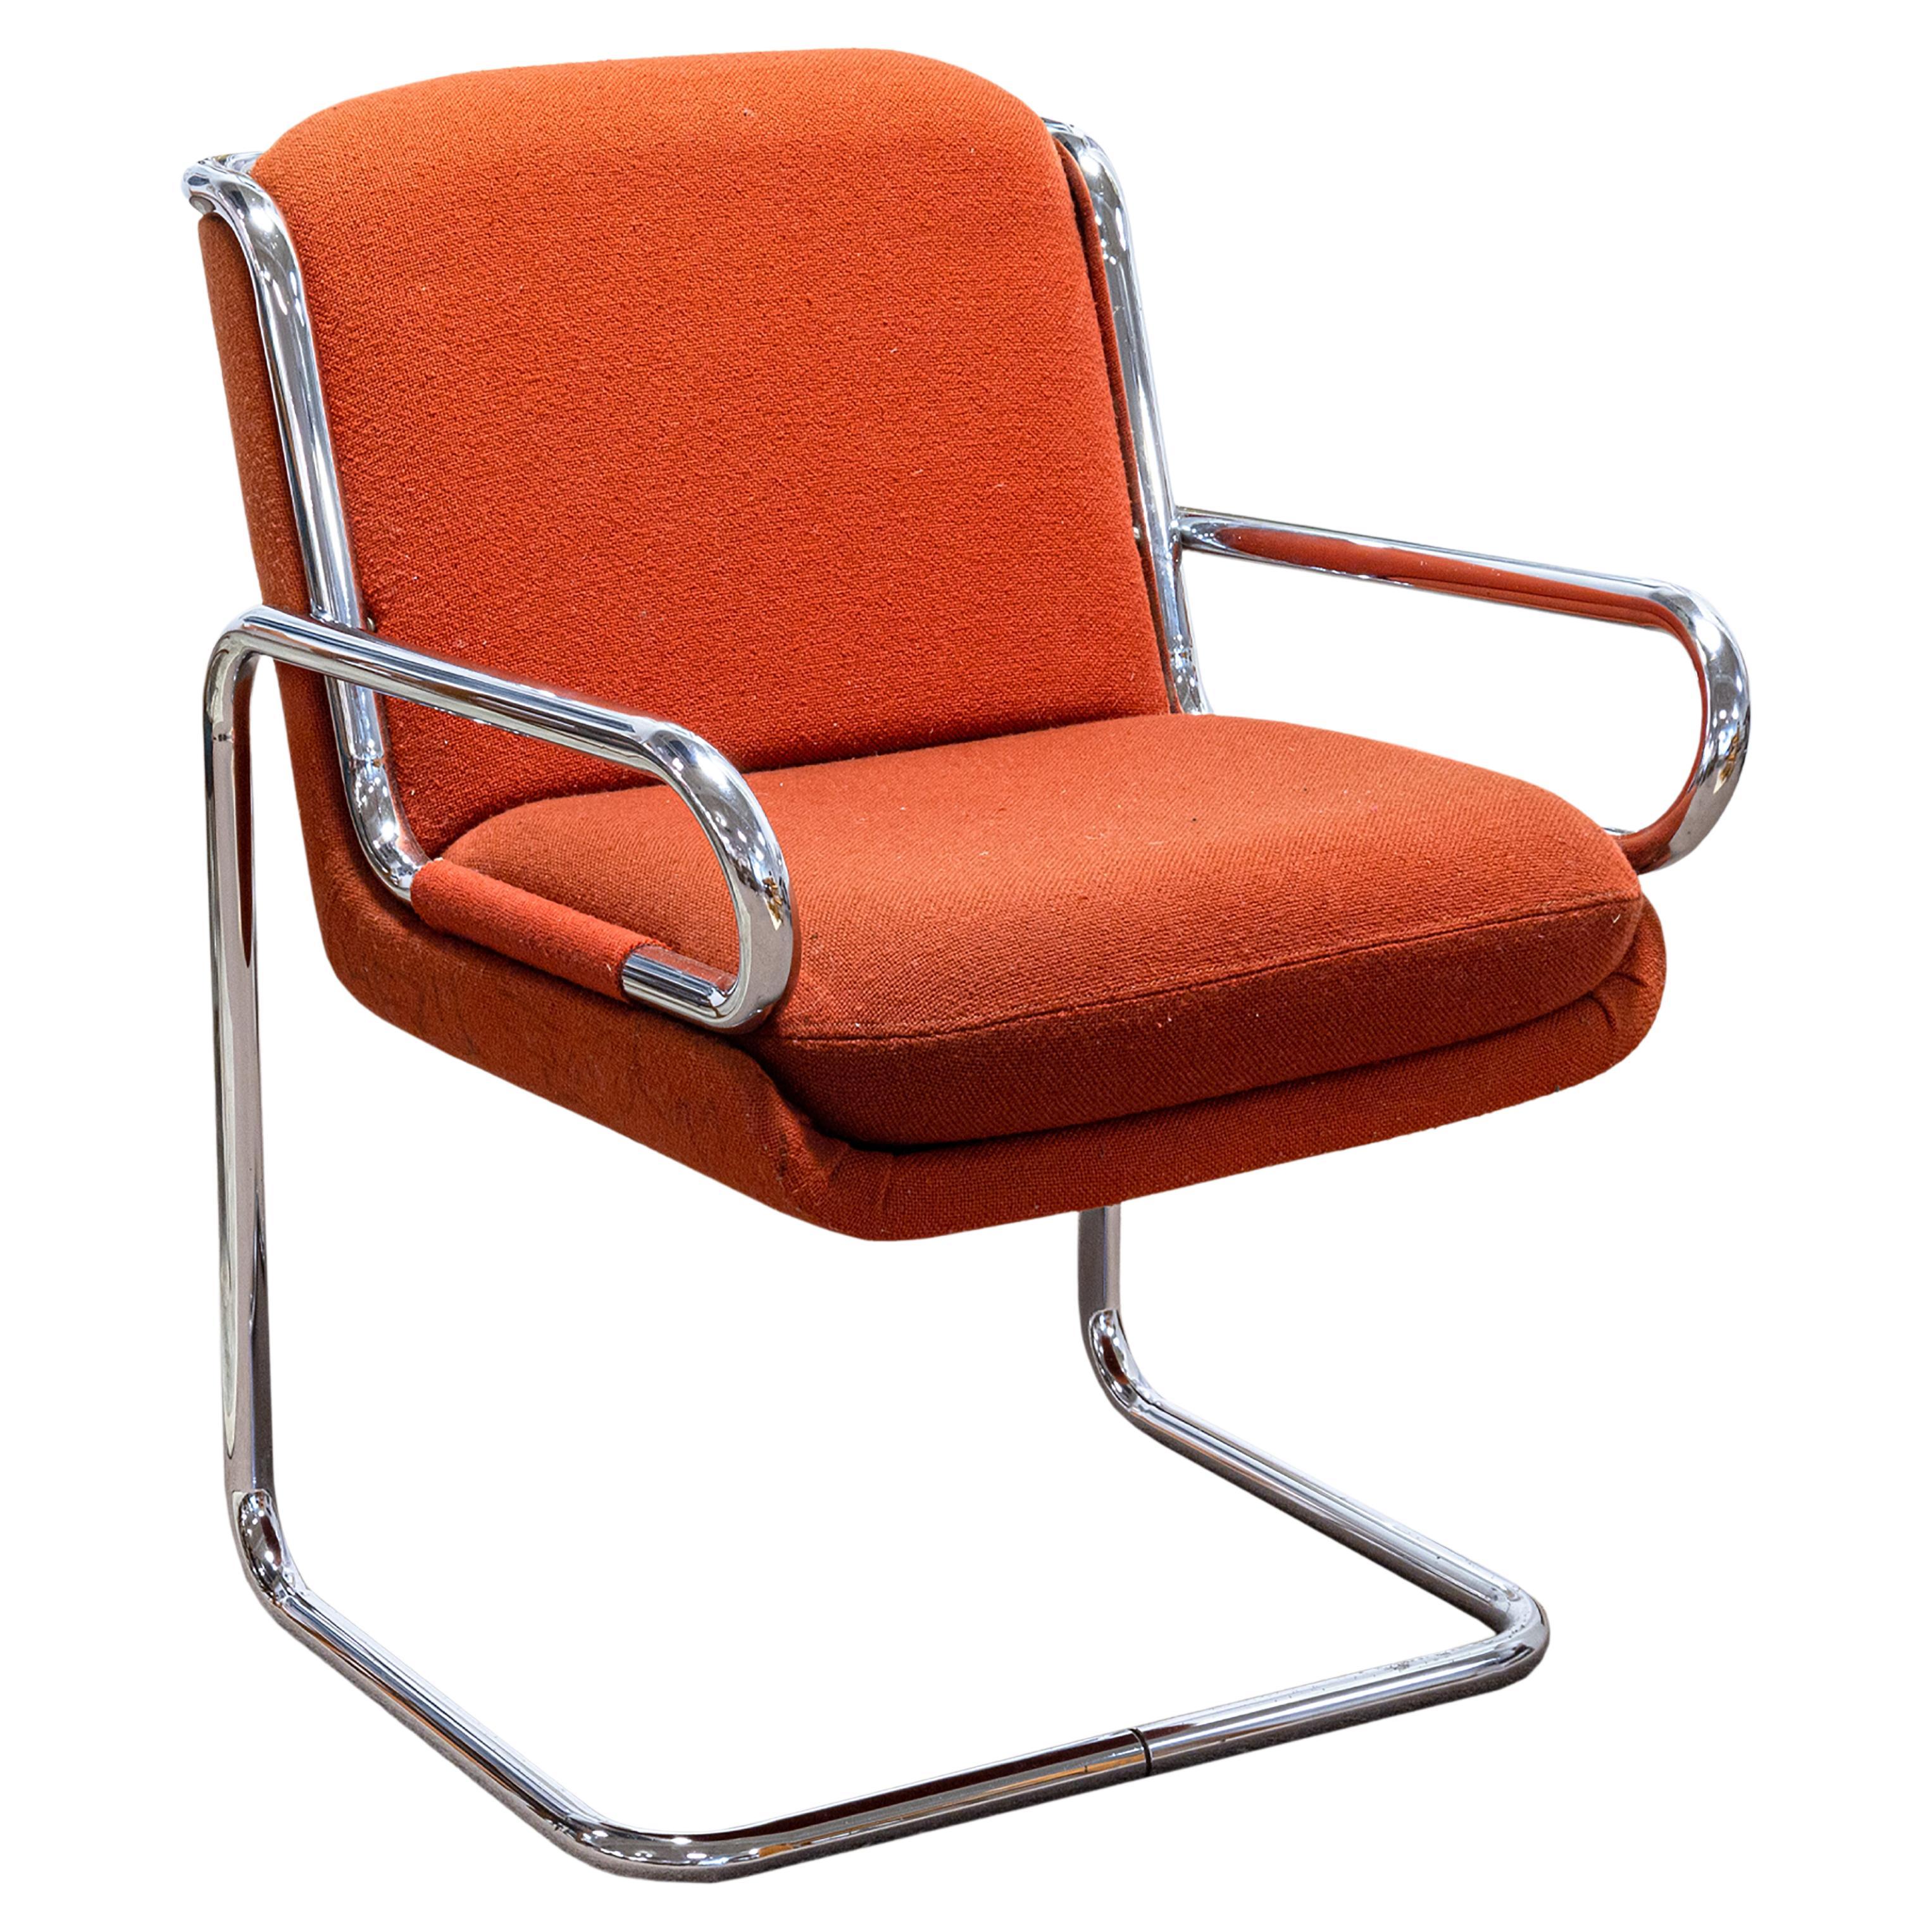 Ralph Rye für Dunbar Stuhl Prototyp Stahlrohr Stahlrohr-Kissen Orange Knoll-Stoff